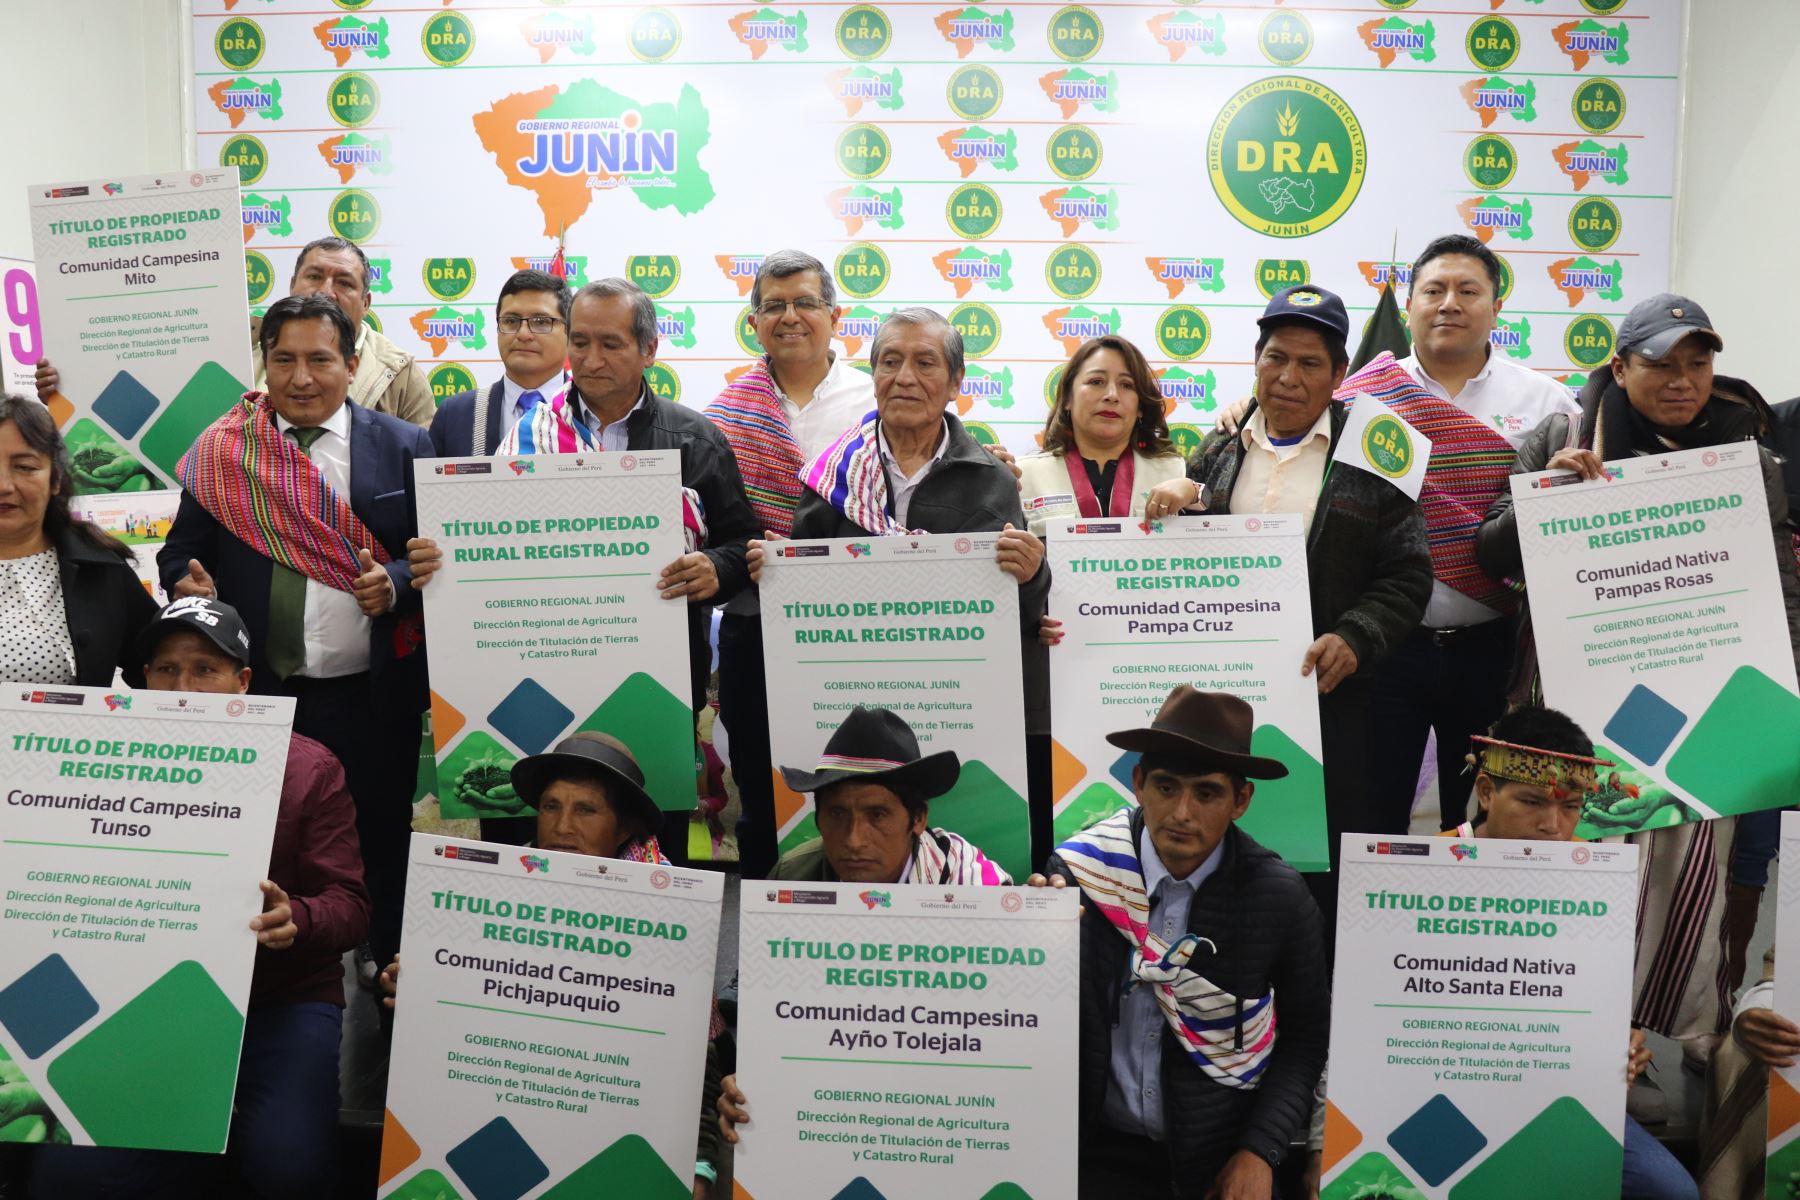 Para este año, se proyecta entregar más de 97,000 títulos de propiedad rural gratuitos en Puno, Cajamarca, Huánuco, Apurímac, Cusco, Amazonas, Ucayali, Loreto, Junín y San Martín.. Foto: ANDINA/Midagri